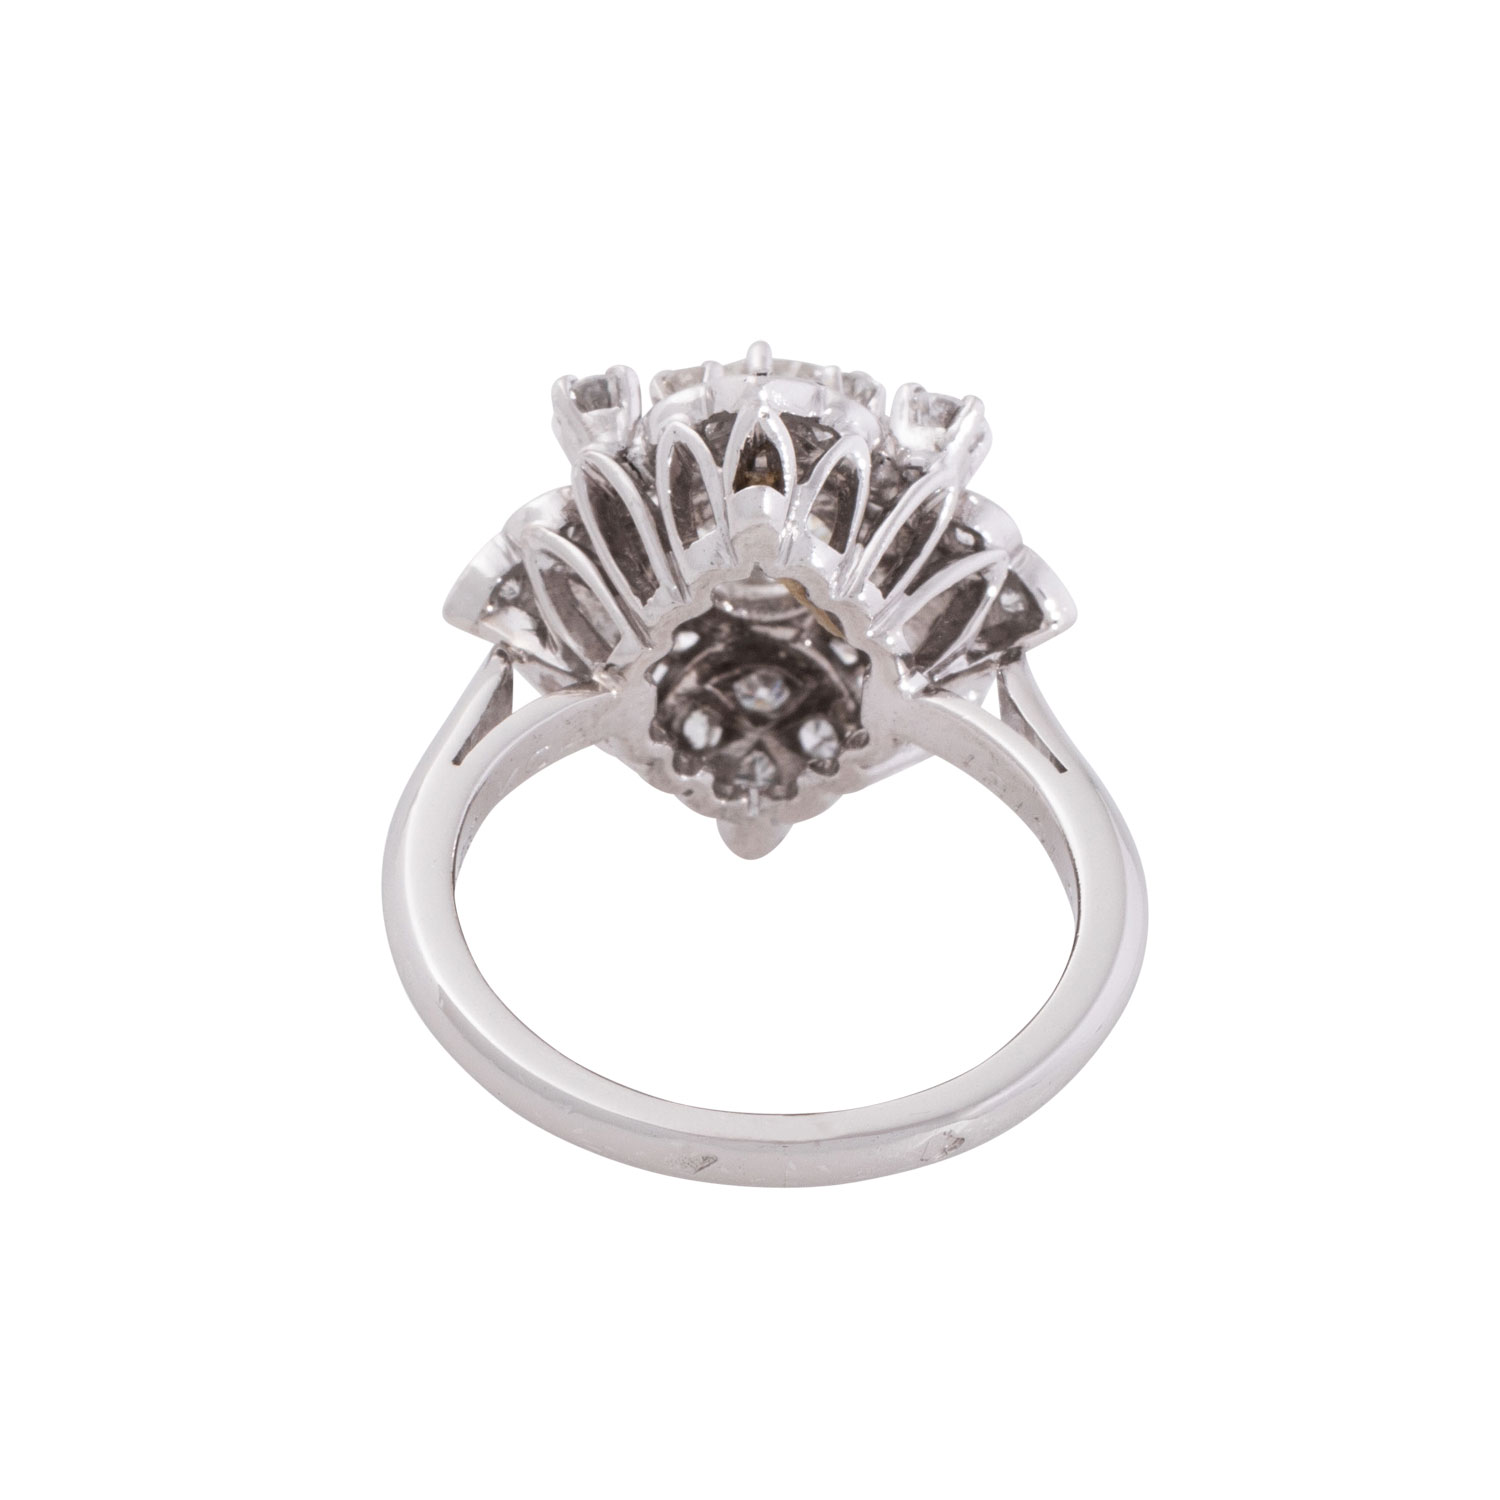 MONTURE/VAN CLEEF & ARPELS Ring mit Altschliffdiamanten, - Image 3 of 5